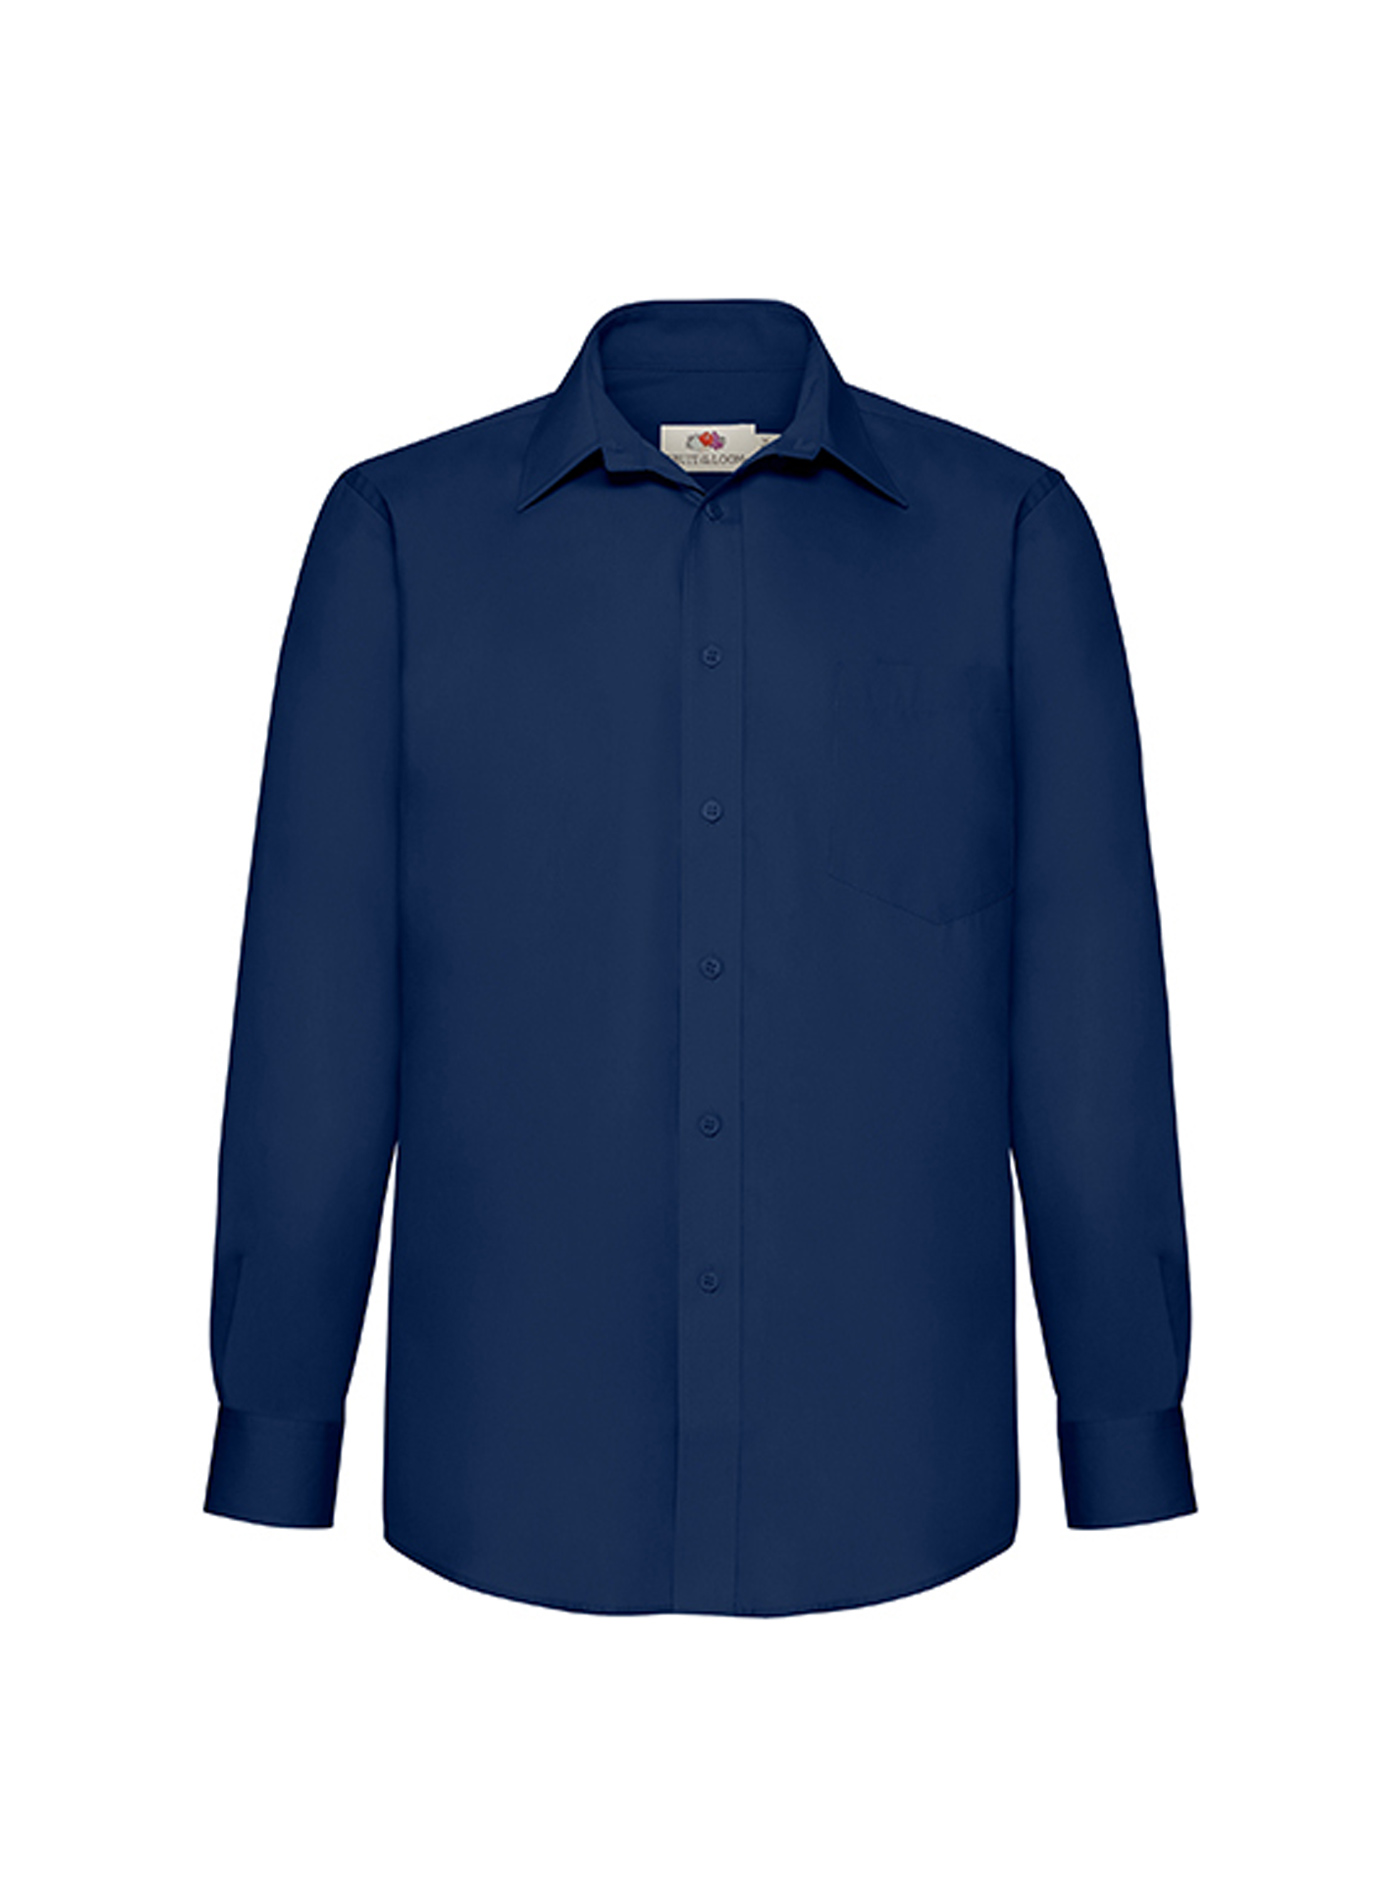 Pánská popelínová košile s dlouhým rukávem Fruit of the Loom - Námořnická modrá XL